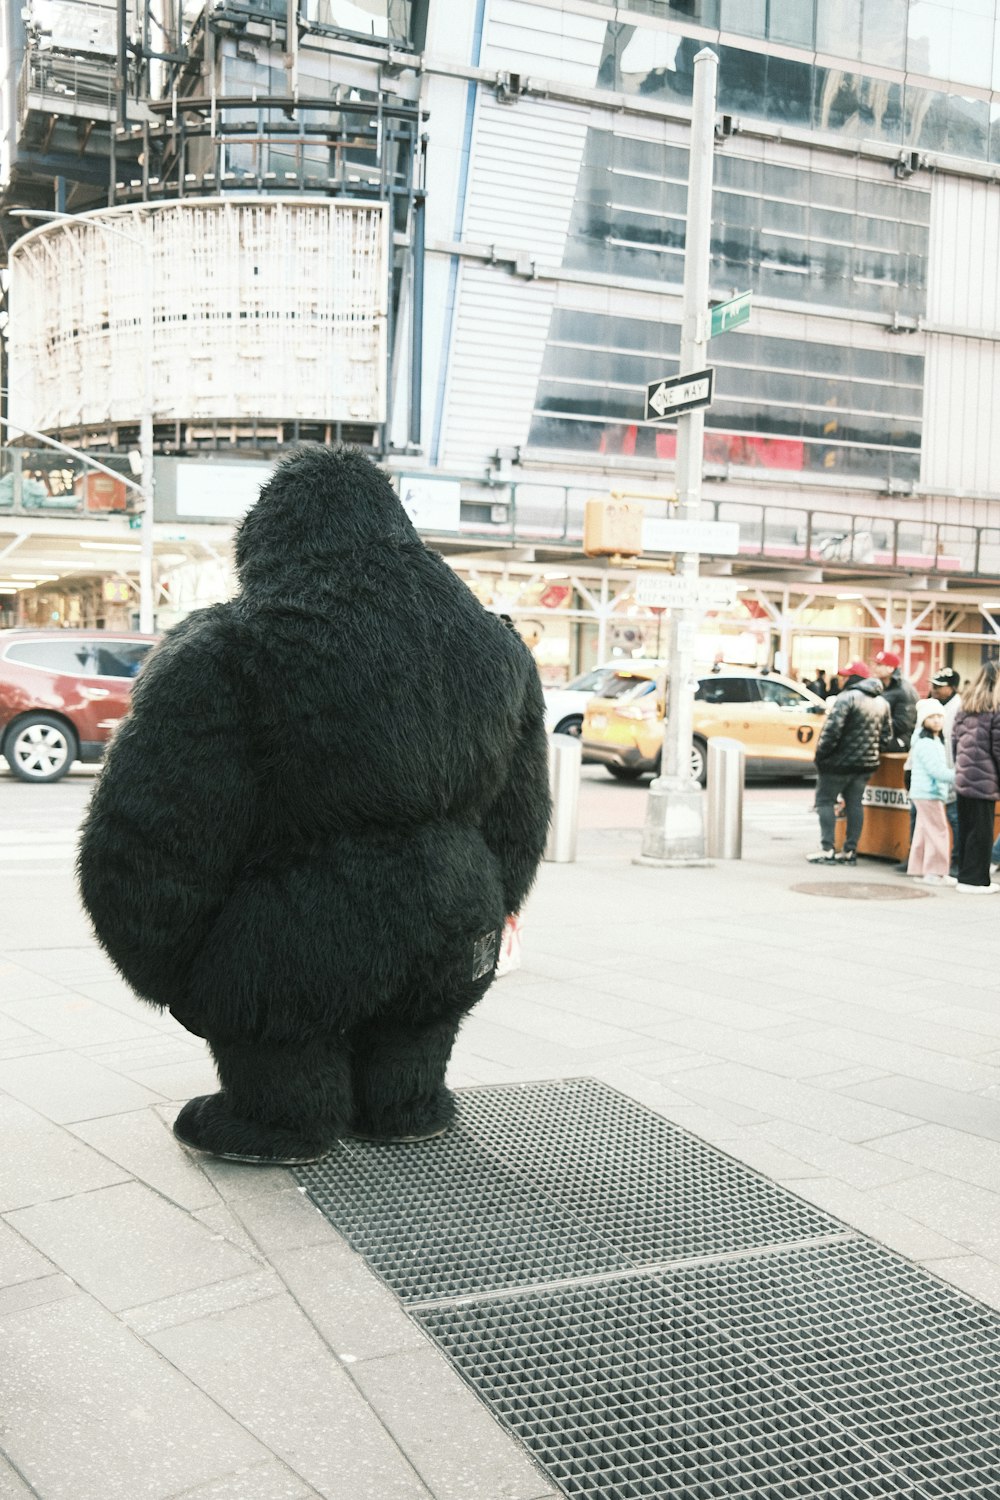 a man in a gorilla suit sitting on a sidewalk